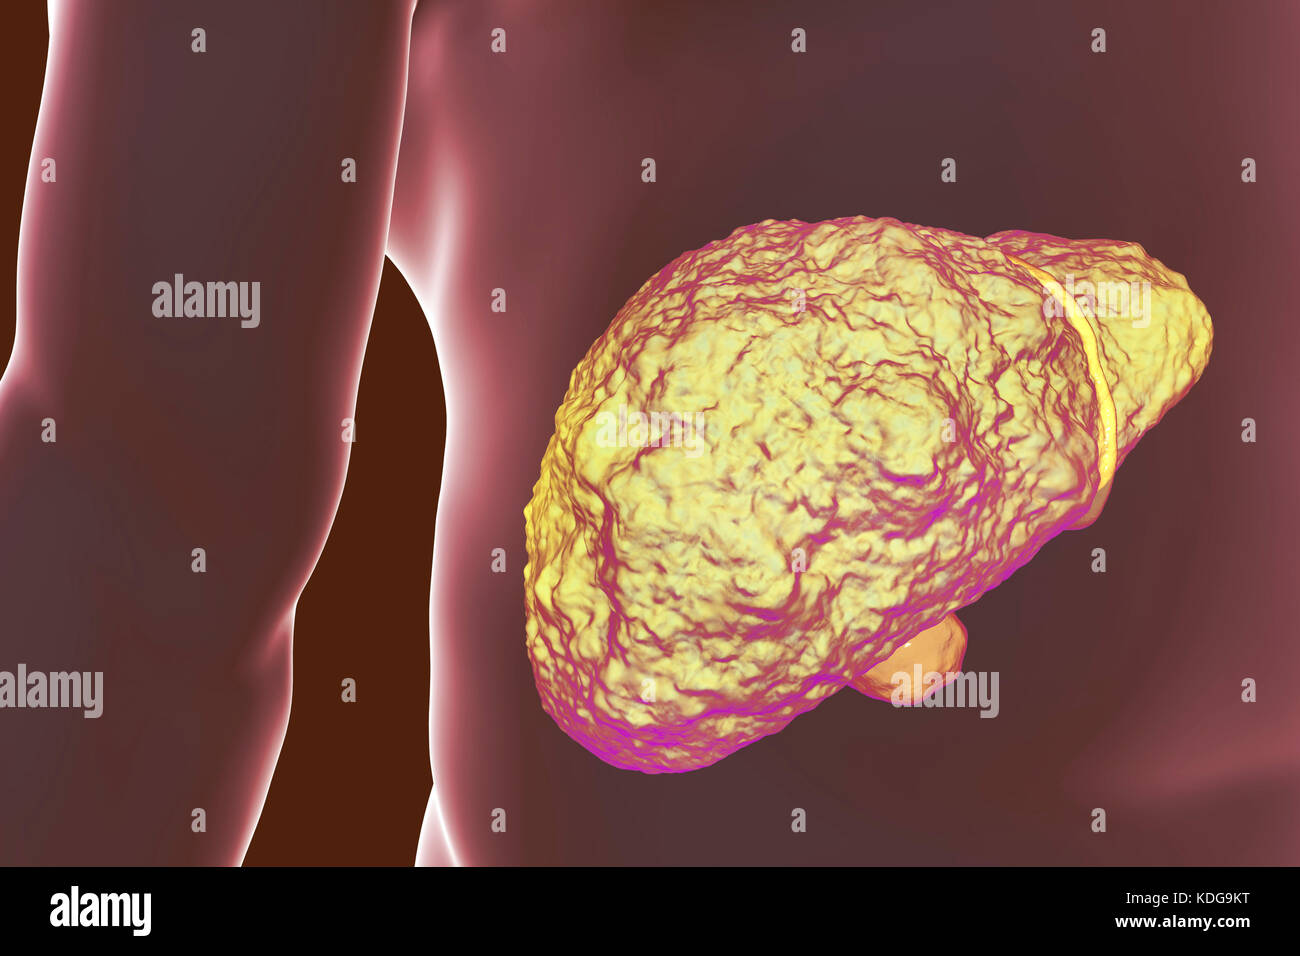 Fegato con cirrosi epatica, illustrazione del computer. La cirrosi è una conseguenza di malattie croniche di fegato caratterizzata da fibrosi e cicatrizzazione del tessuto. Foto Stock